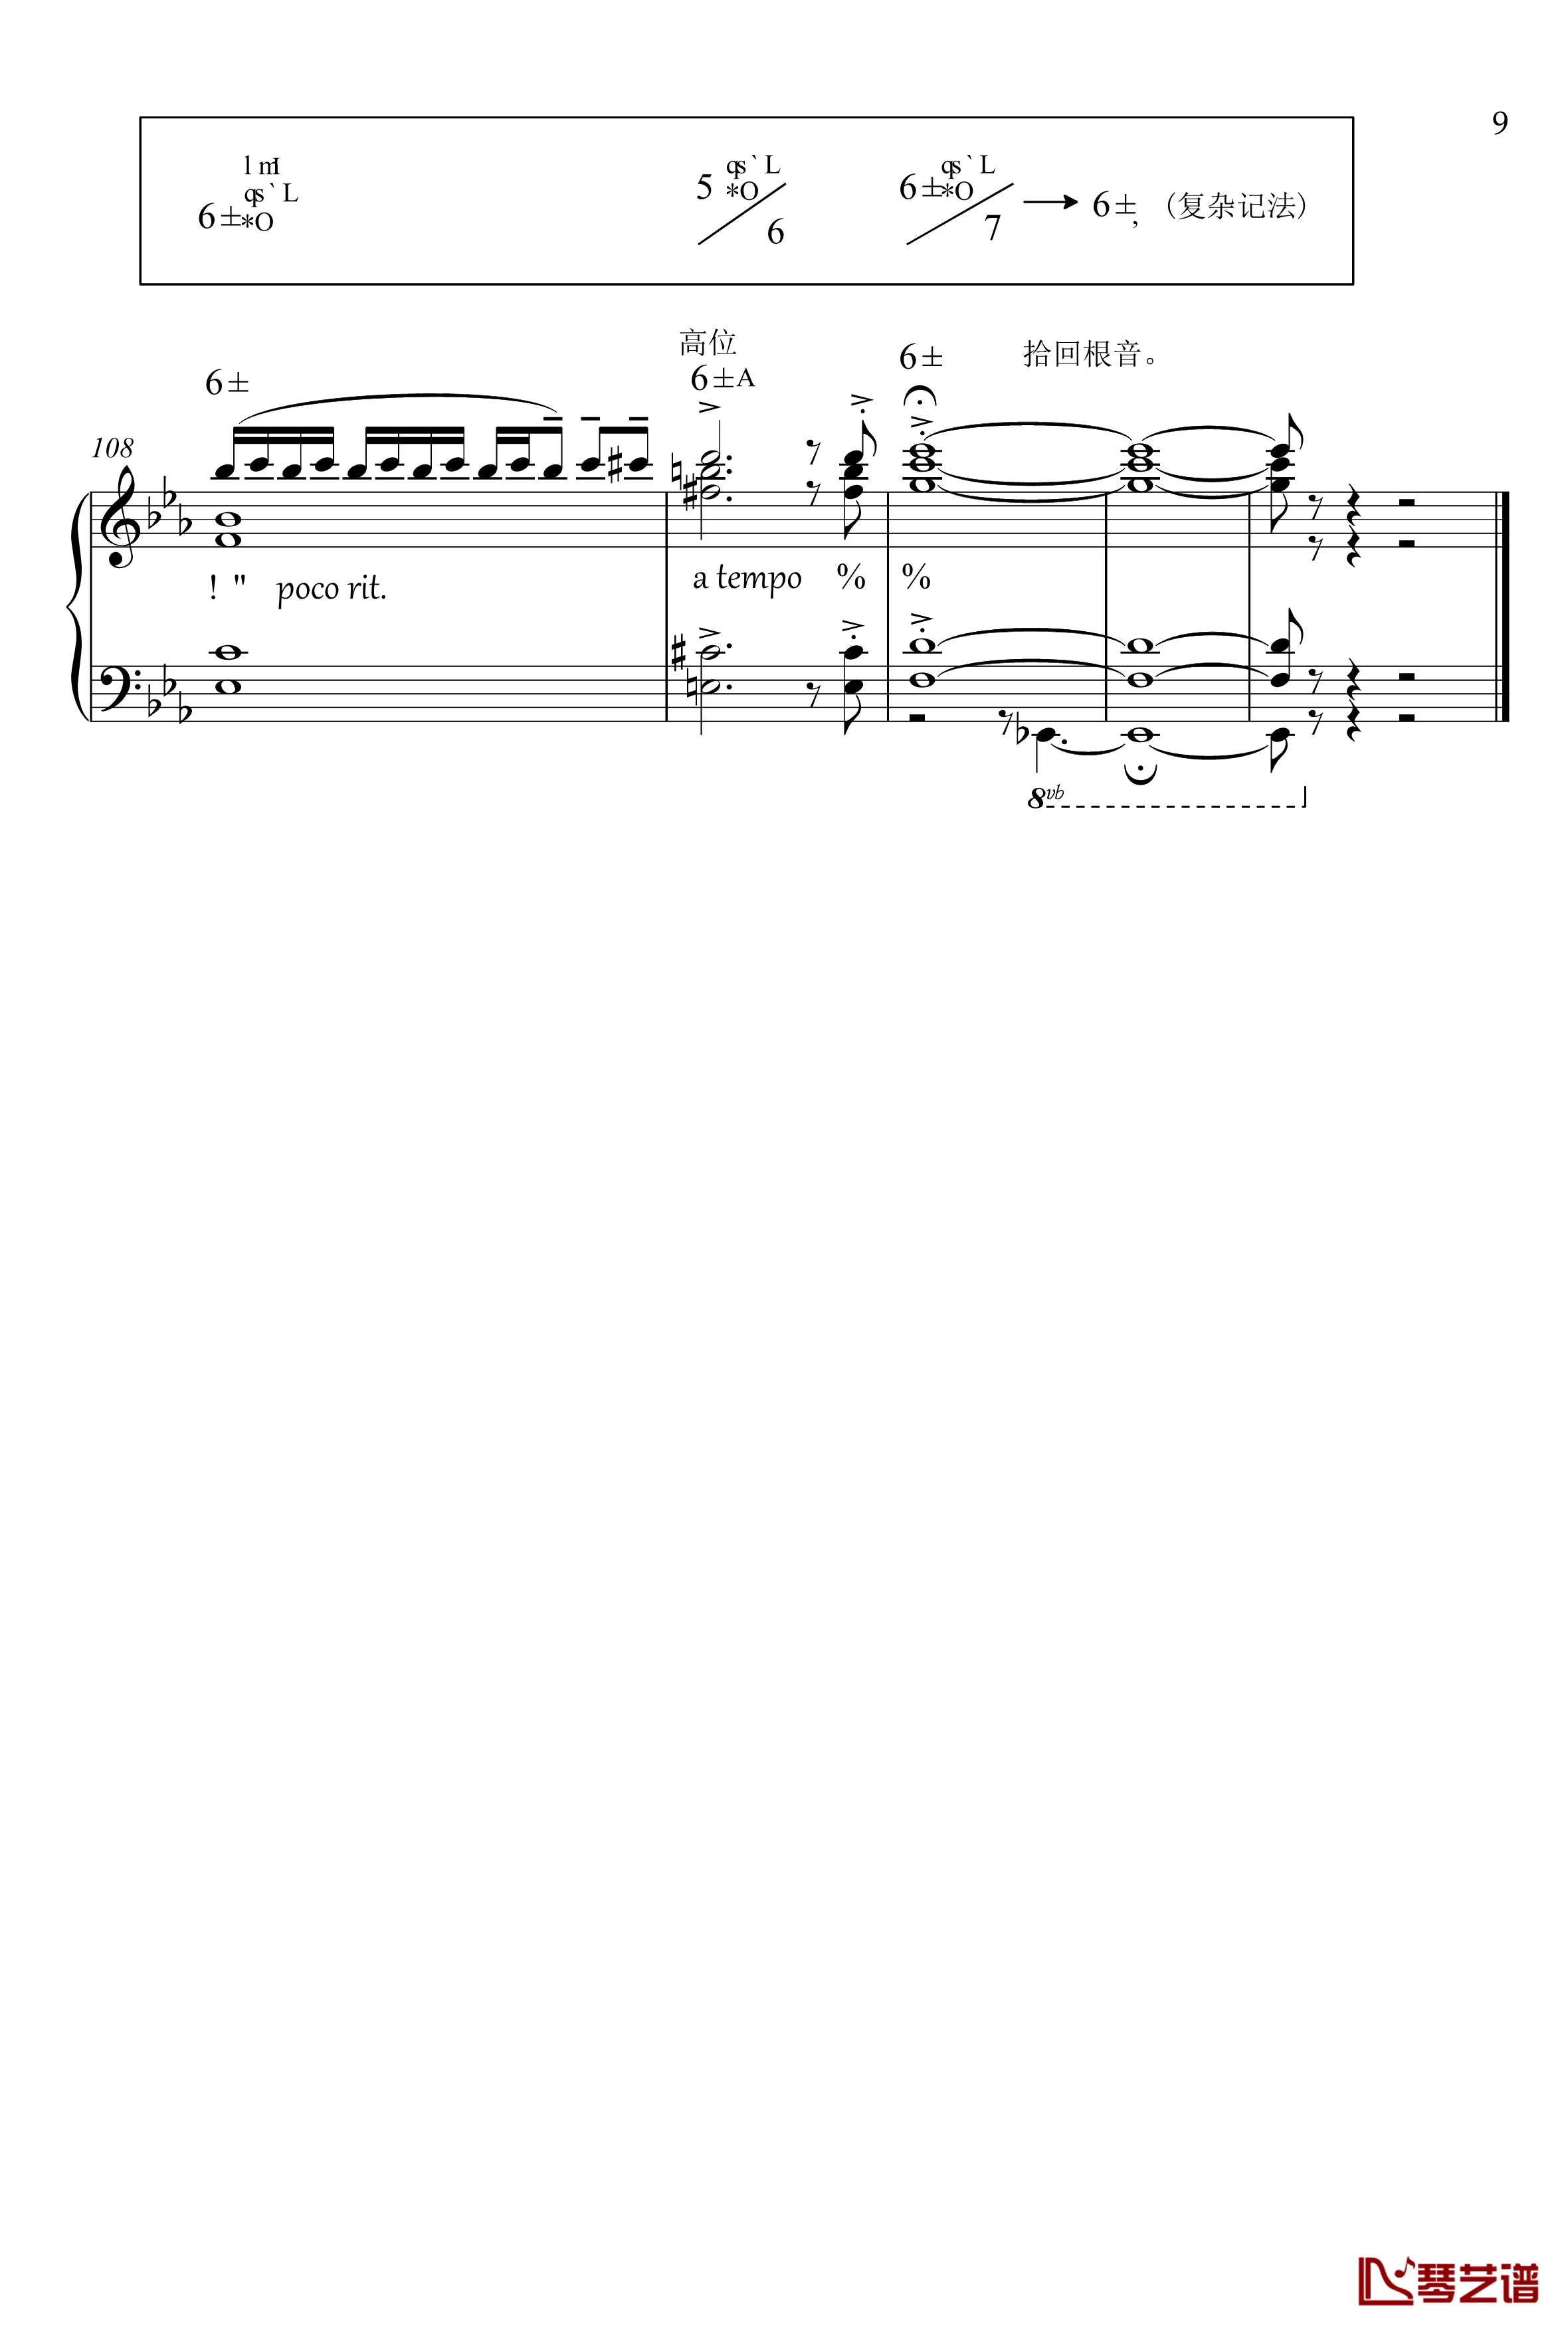 罗兰灯道钢琴谱-分析版-南条绘梨子9